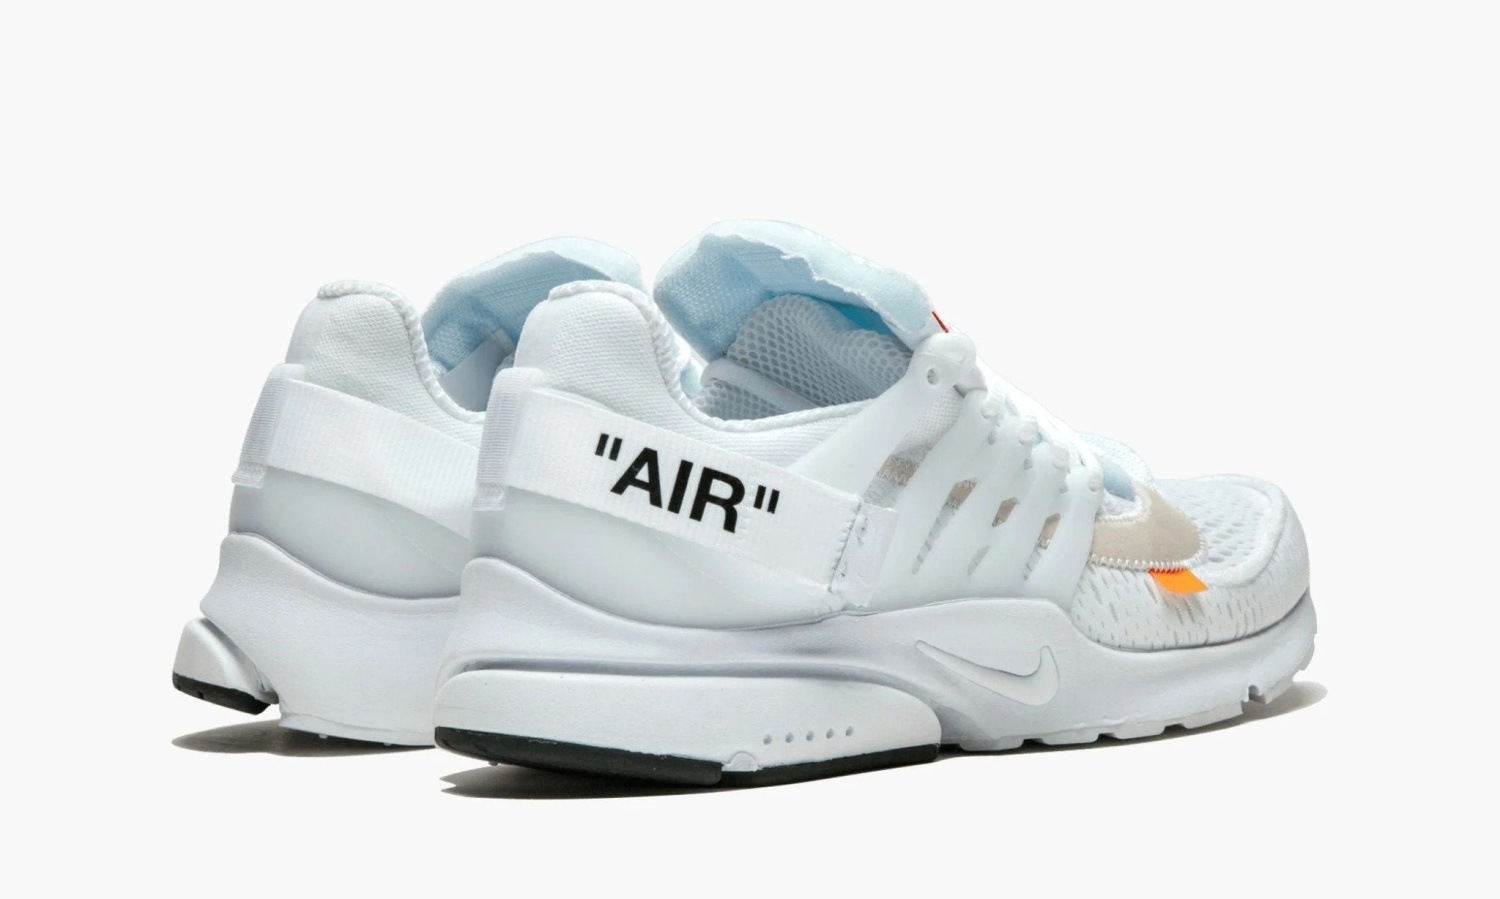 фото The 10 : Nike Air Presto “Off-White Polar Opposites White” (Nike Air Presto)-AA3830100